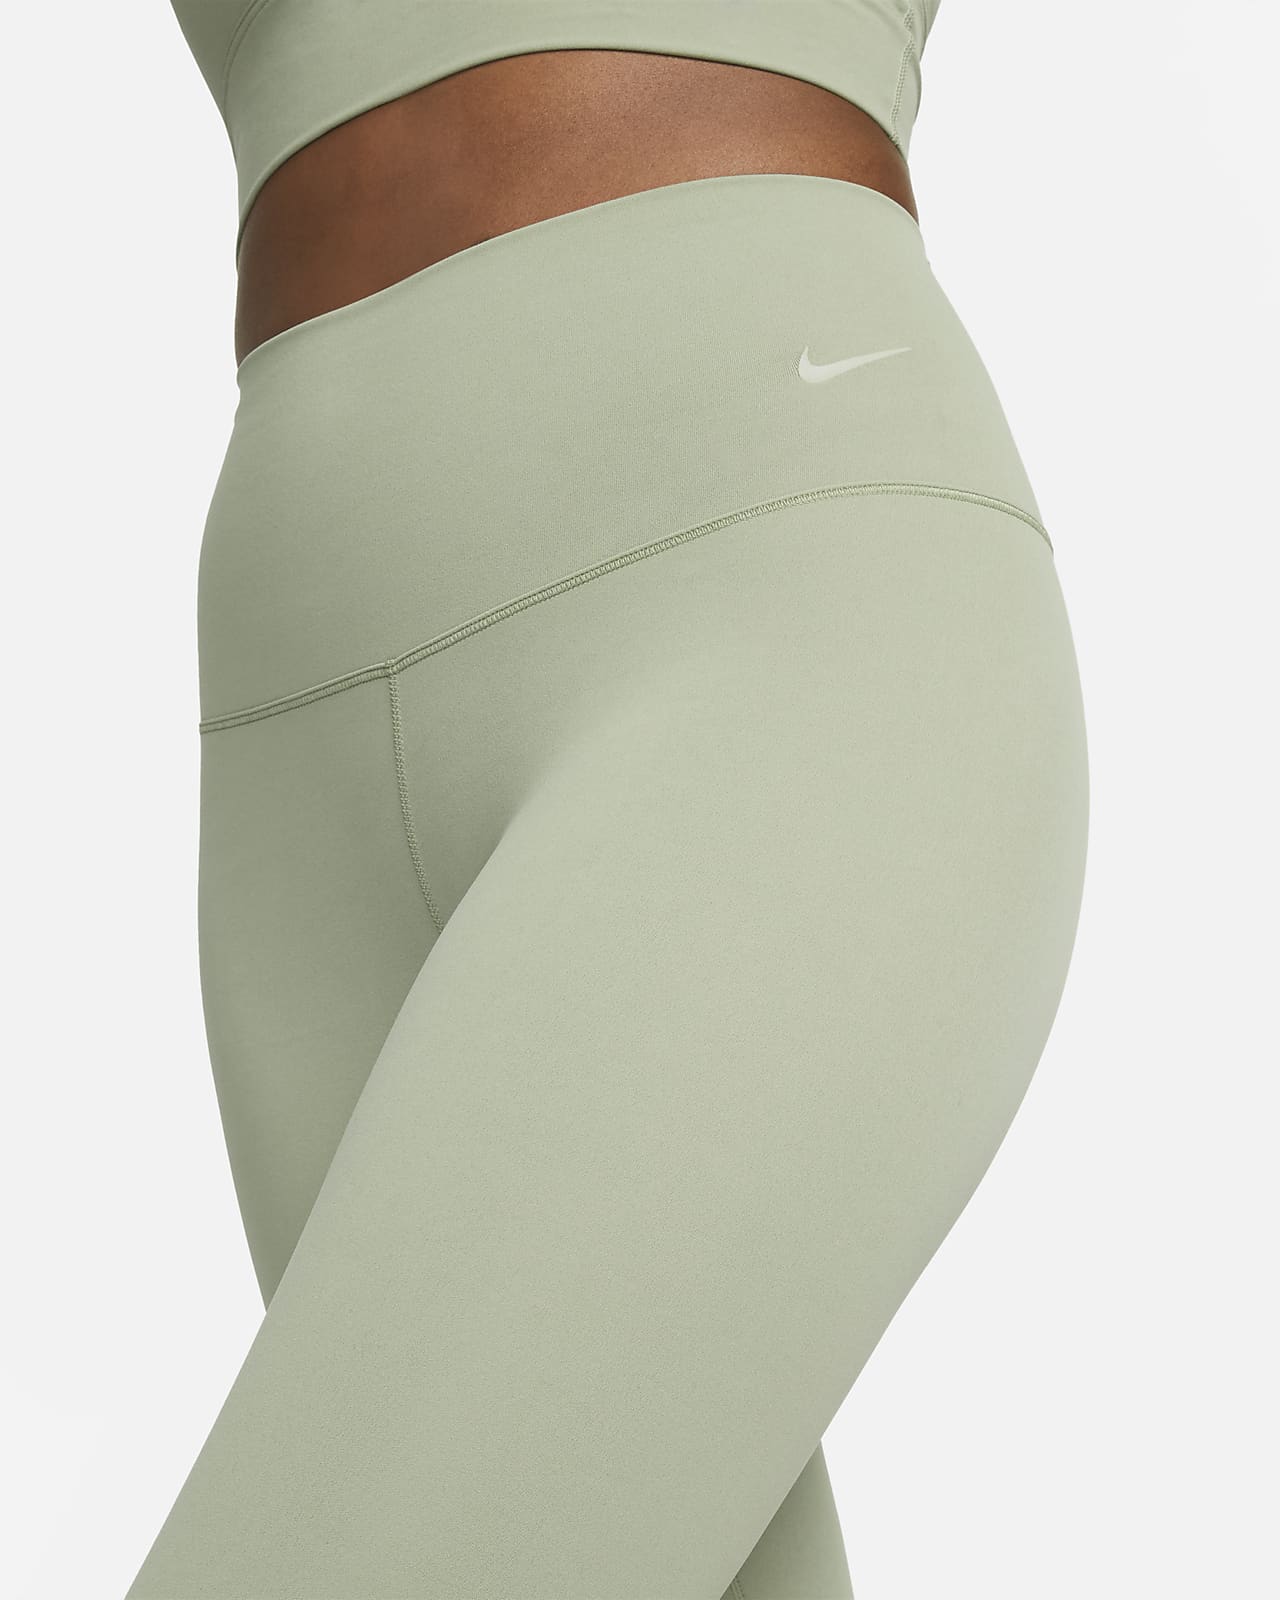 Nike Capri leggings  Nike capris, Capri leggings, Clothes design